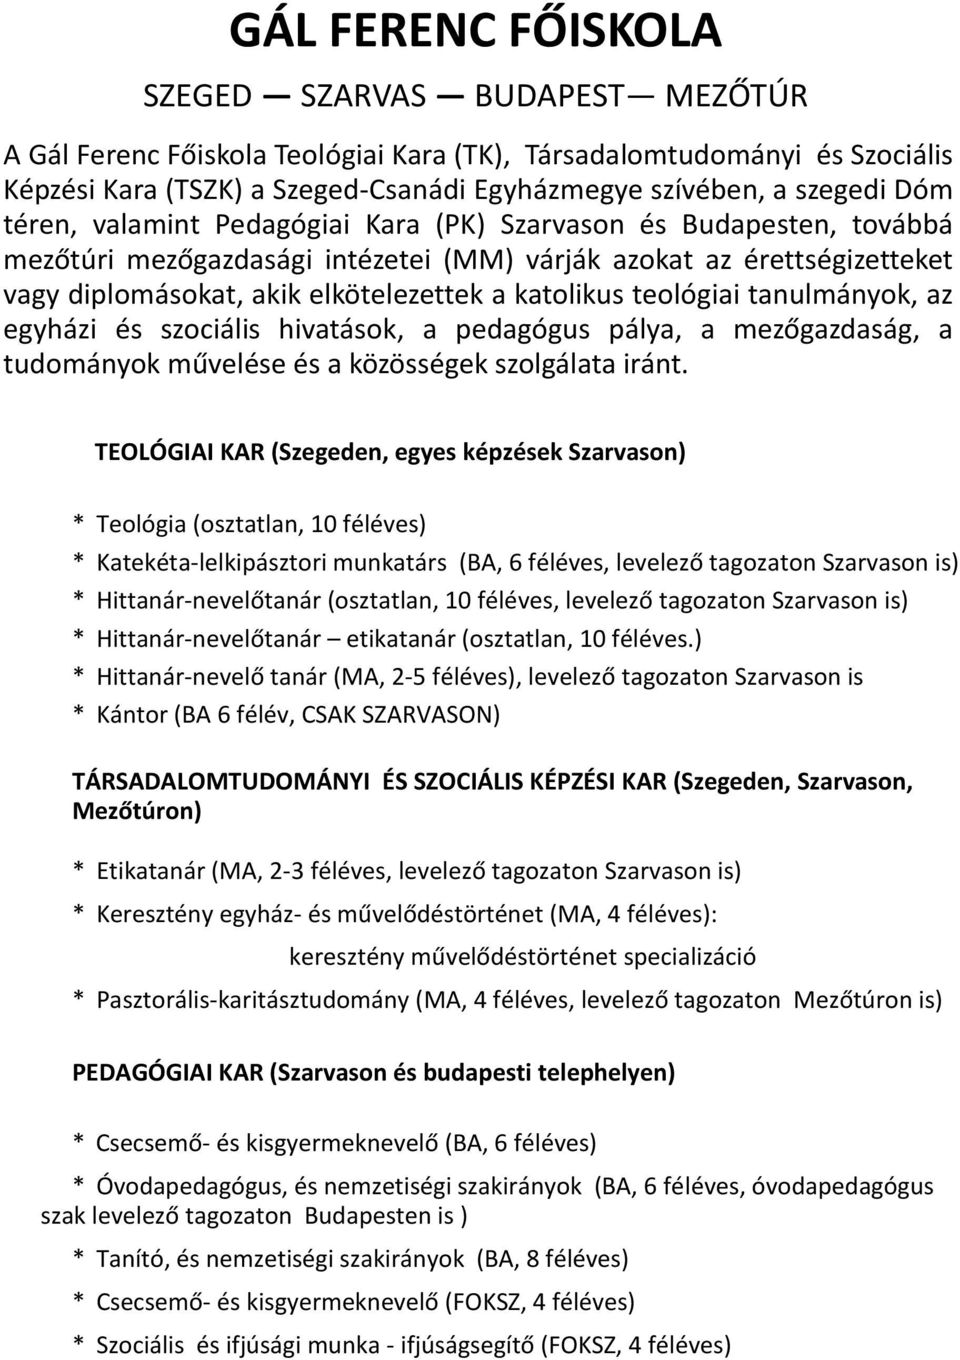 GÁL FERENC FŐISKOLA SZEGED SZARVAS BUDAPEST MEZŐTÚR. TEOLÓGIAI KAR  (Szegeden, egyes képzések Szarvason) - PDF Free Download